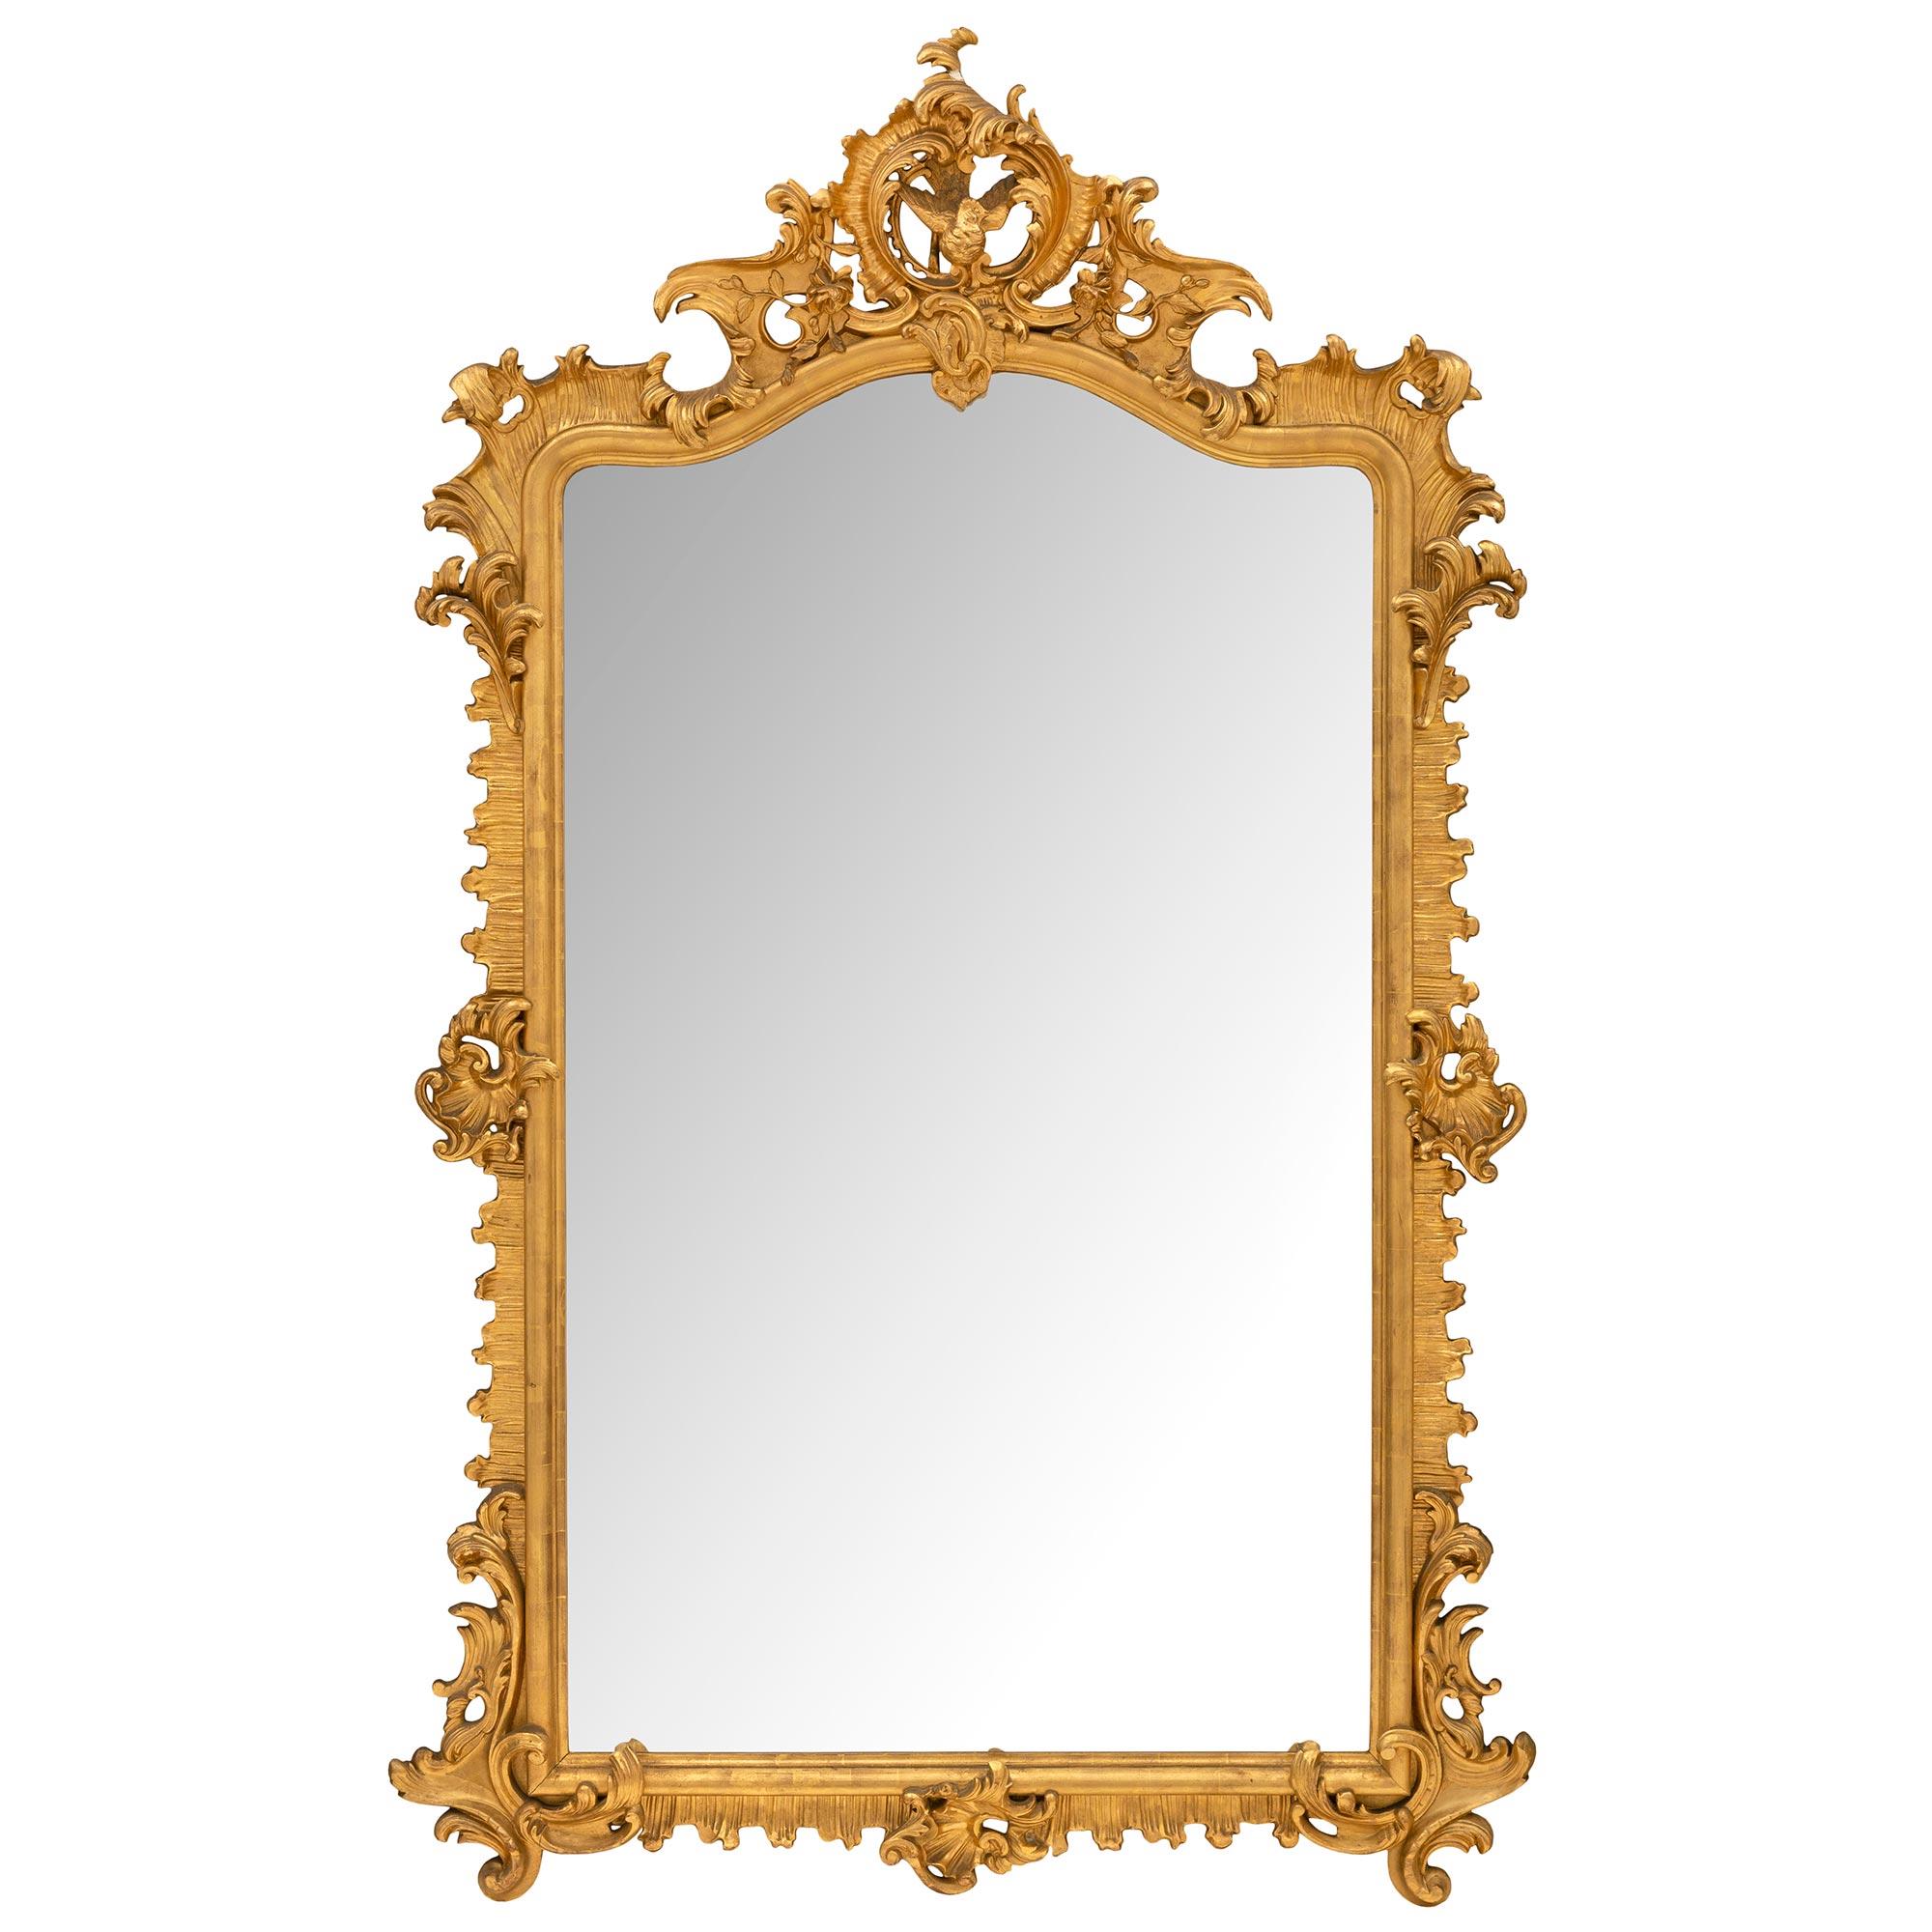 Eine sensationelle und großformatige italienische 19. Jahrhundert Rokoko st. Vergoldung Spiegel. Der Spiegel behält seine ursprüngliche Spiegelplatte in einem eleganten gesprenkelten Rahmen mit schönen geriffelten Blattwerken, beeindruckend reich